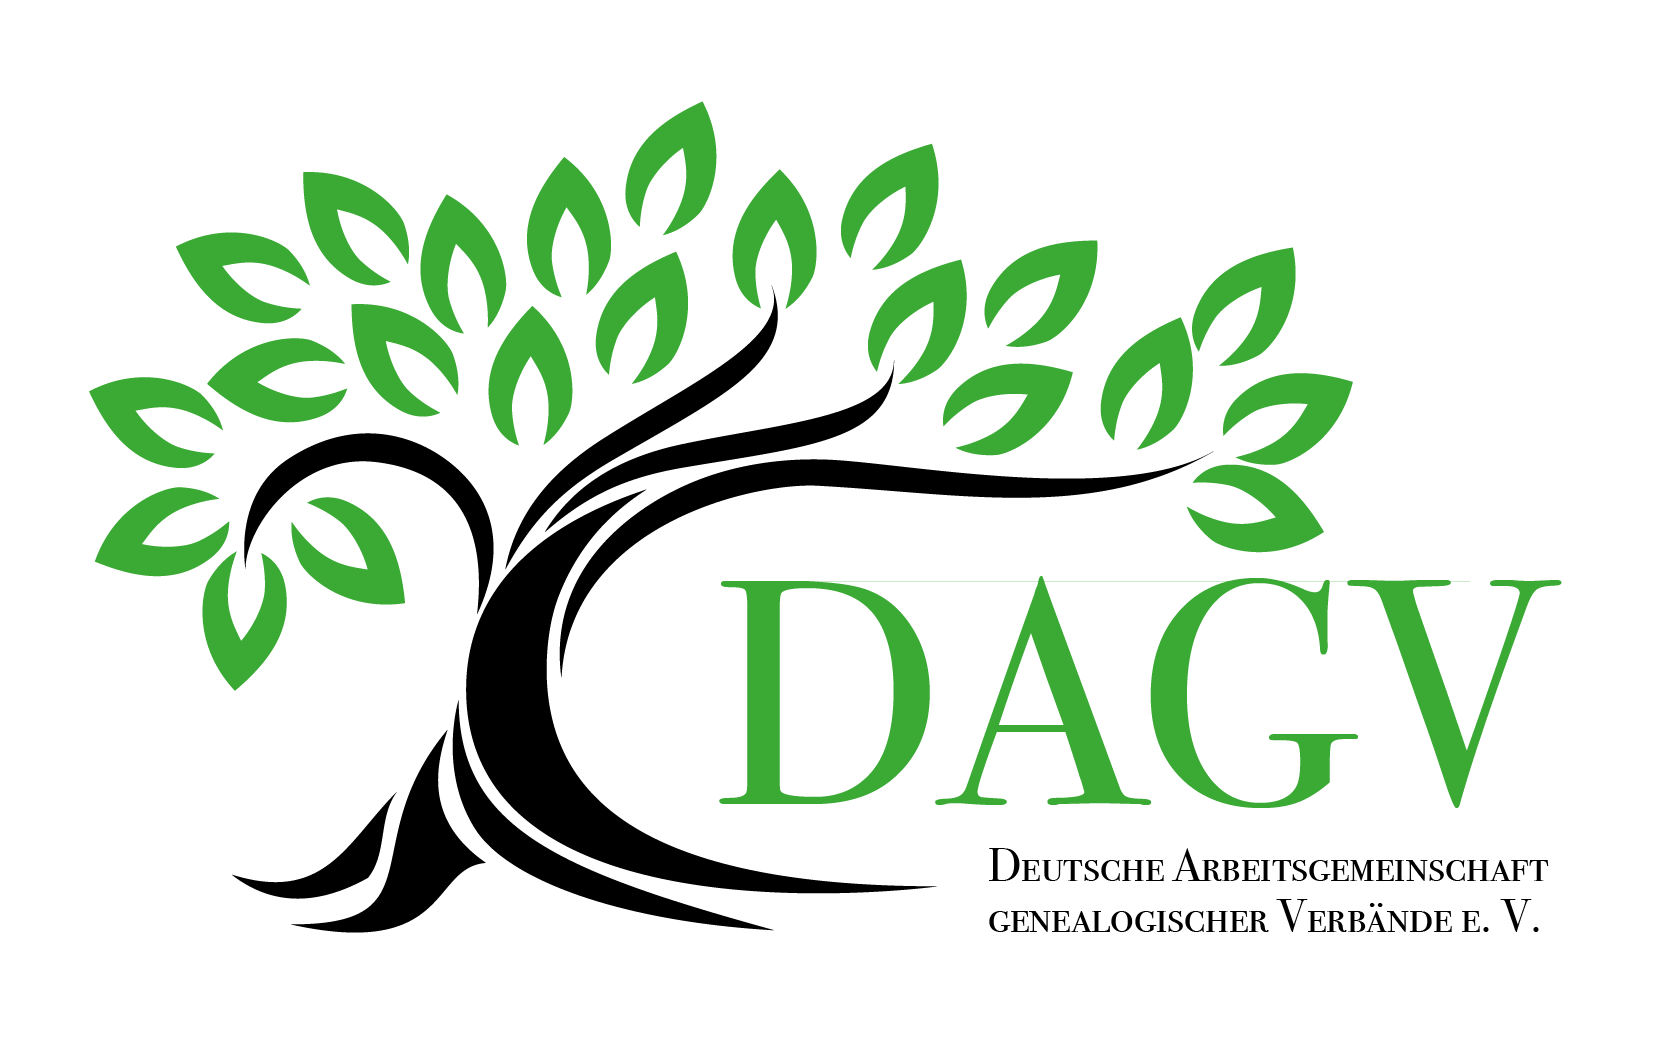 Deutsche Arbeitsgemeinschaft genealogischer Verbände e. V. (DAGV)